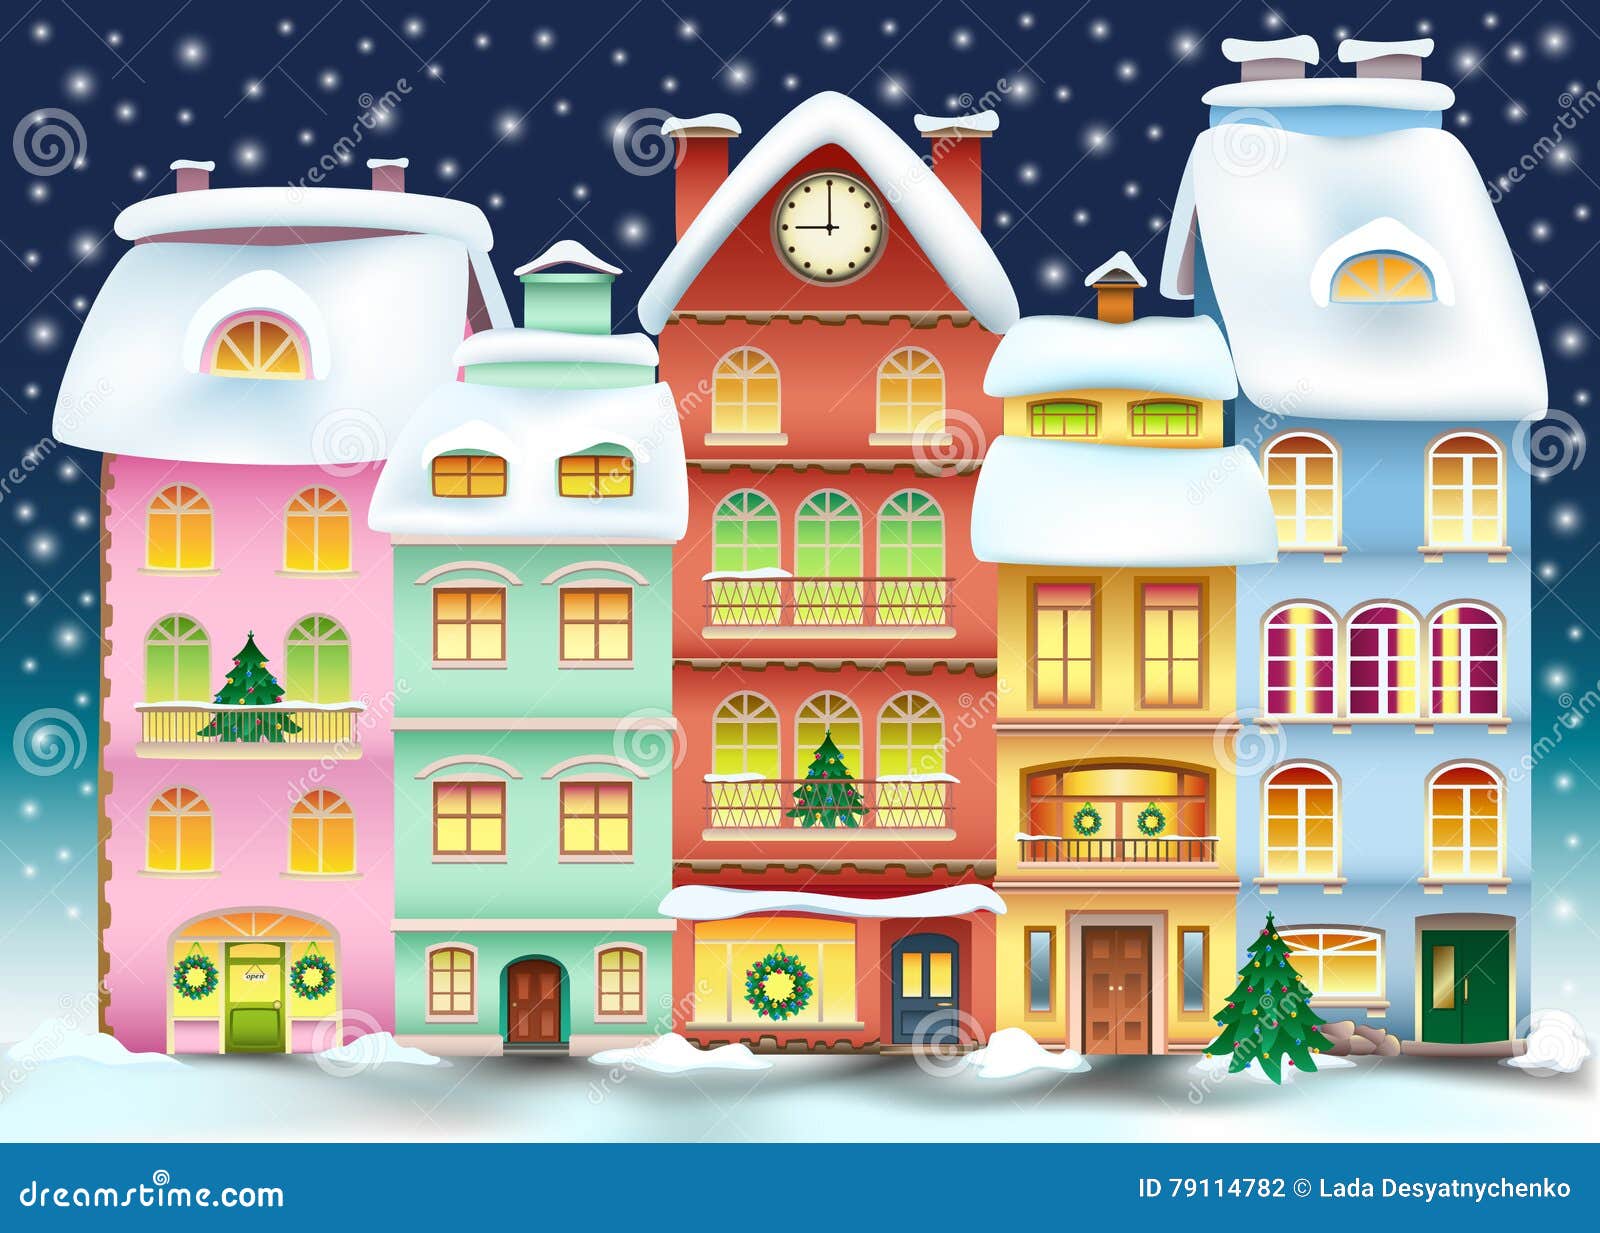 Сказочный зимний дом с окошками